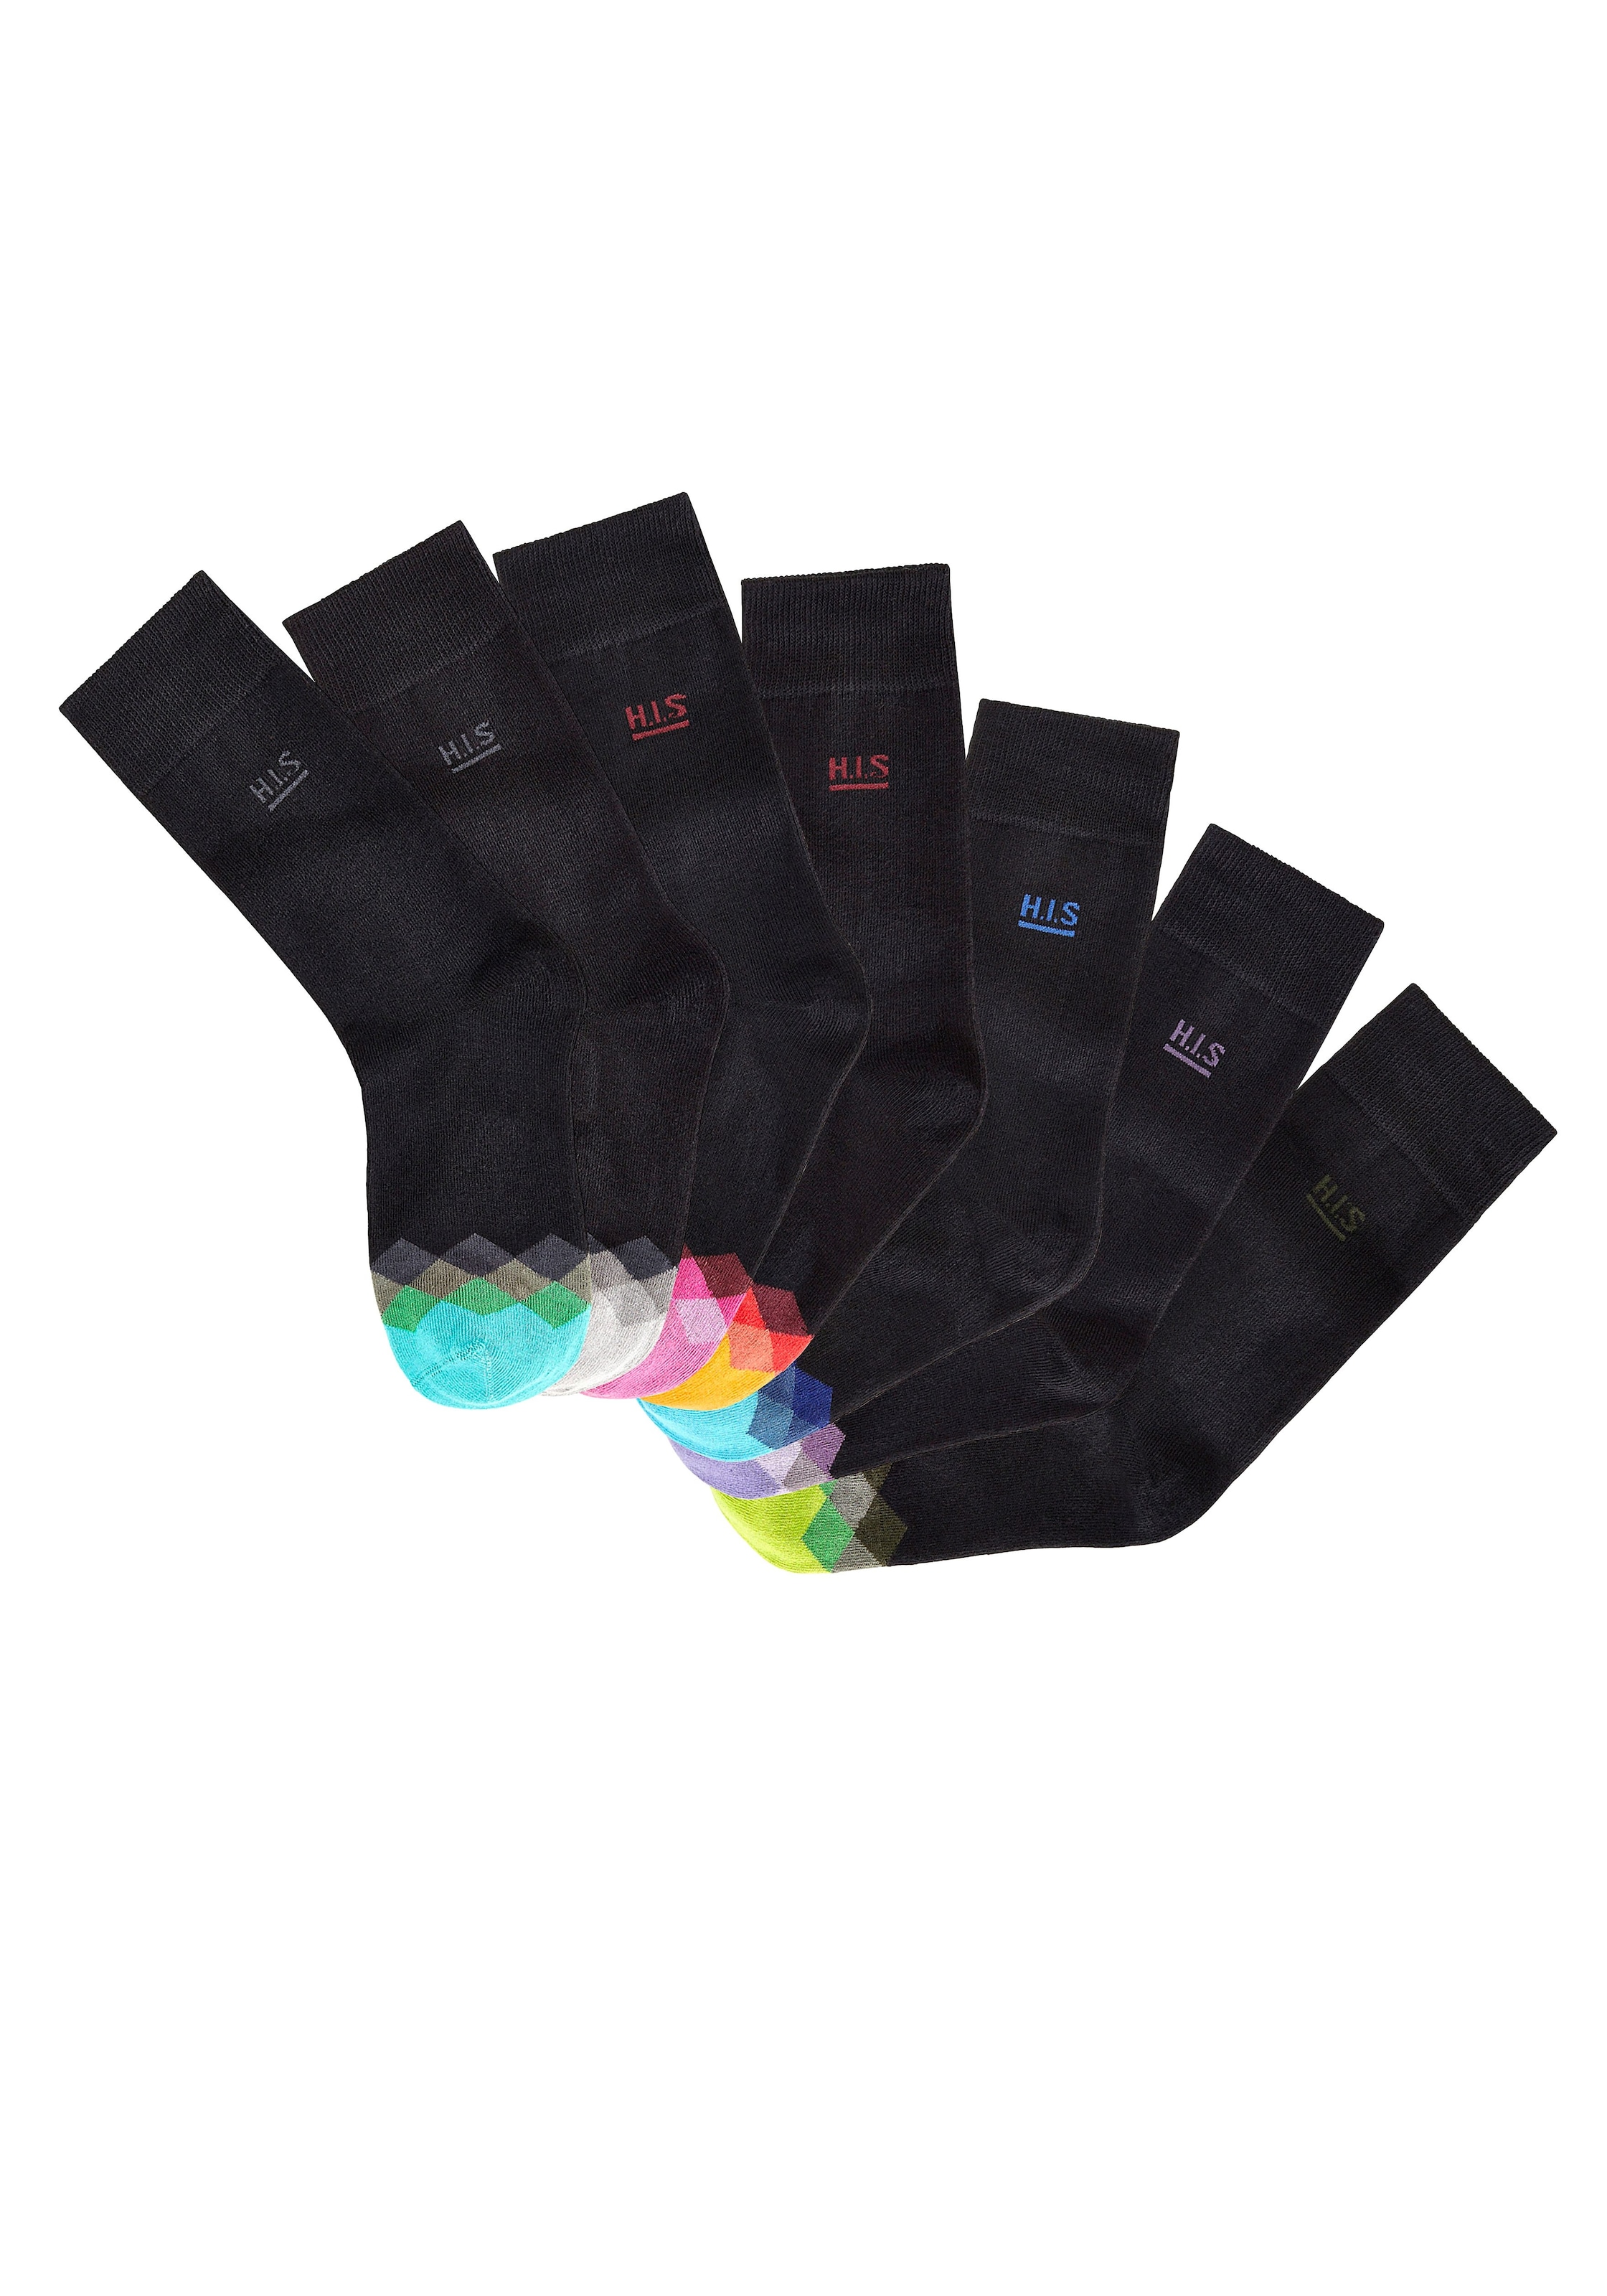 H.I.S Socken (7 Paar) tollen BAUR an der Spitze Farbmuster mit 